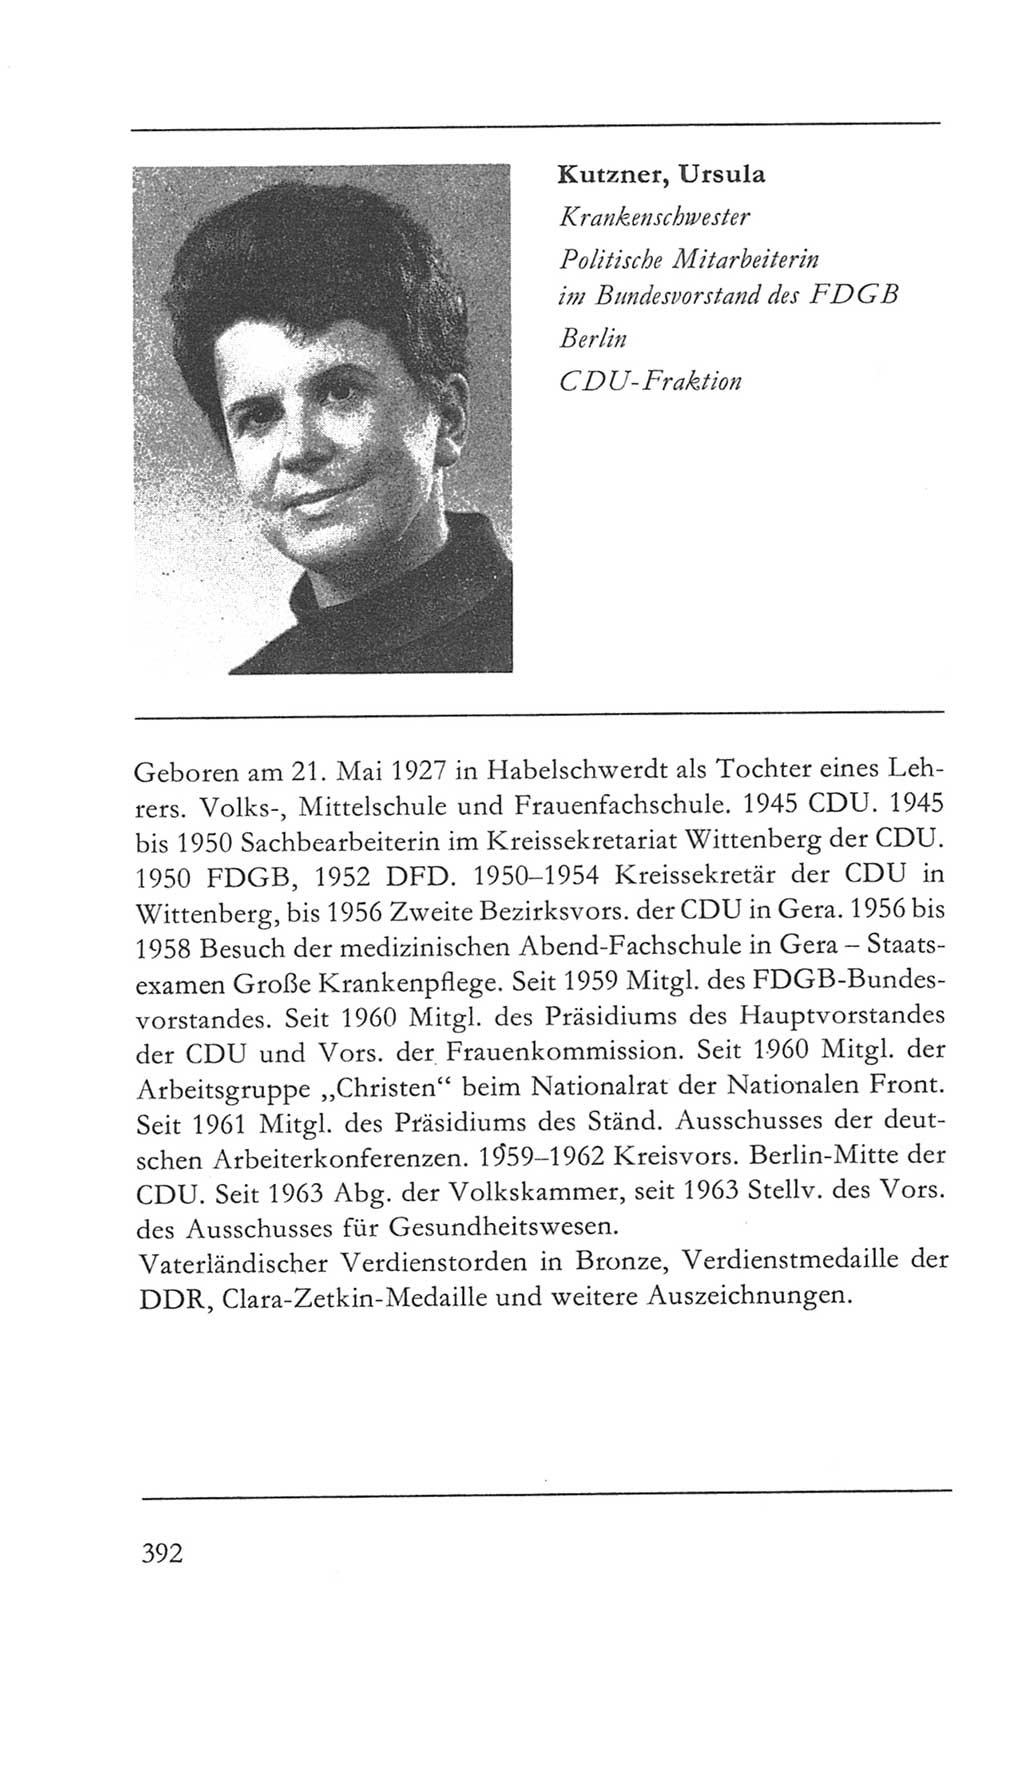 Volkskammer (VK) der Deutschen Demokratischen Republik (DDR) 5. Wahlperiode 1967-1971, Seite 392 (VK. DDR 5. WP. 1967-1971, S. 392)